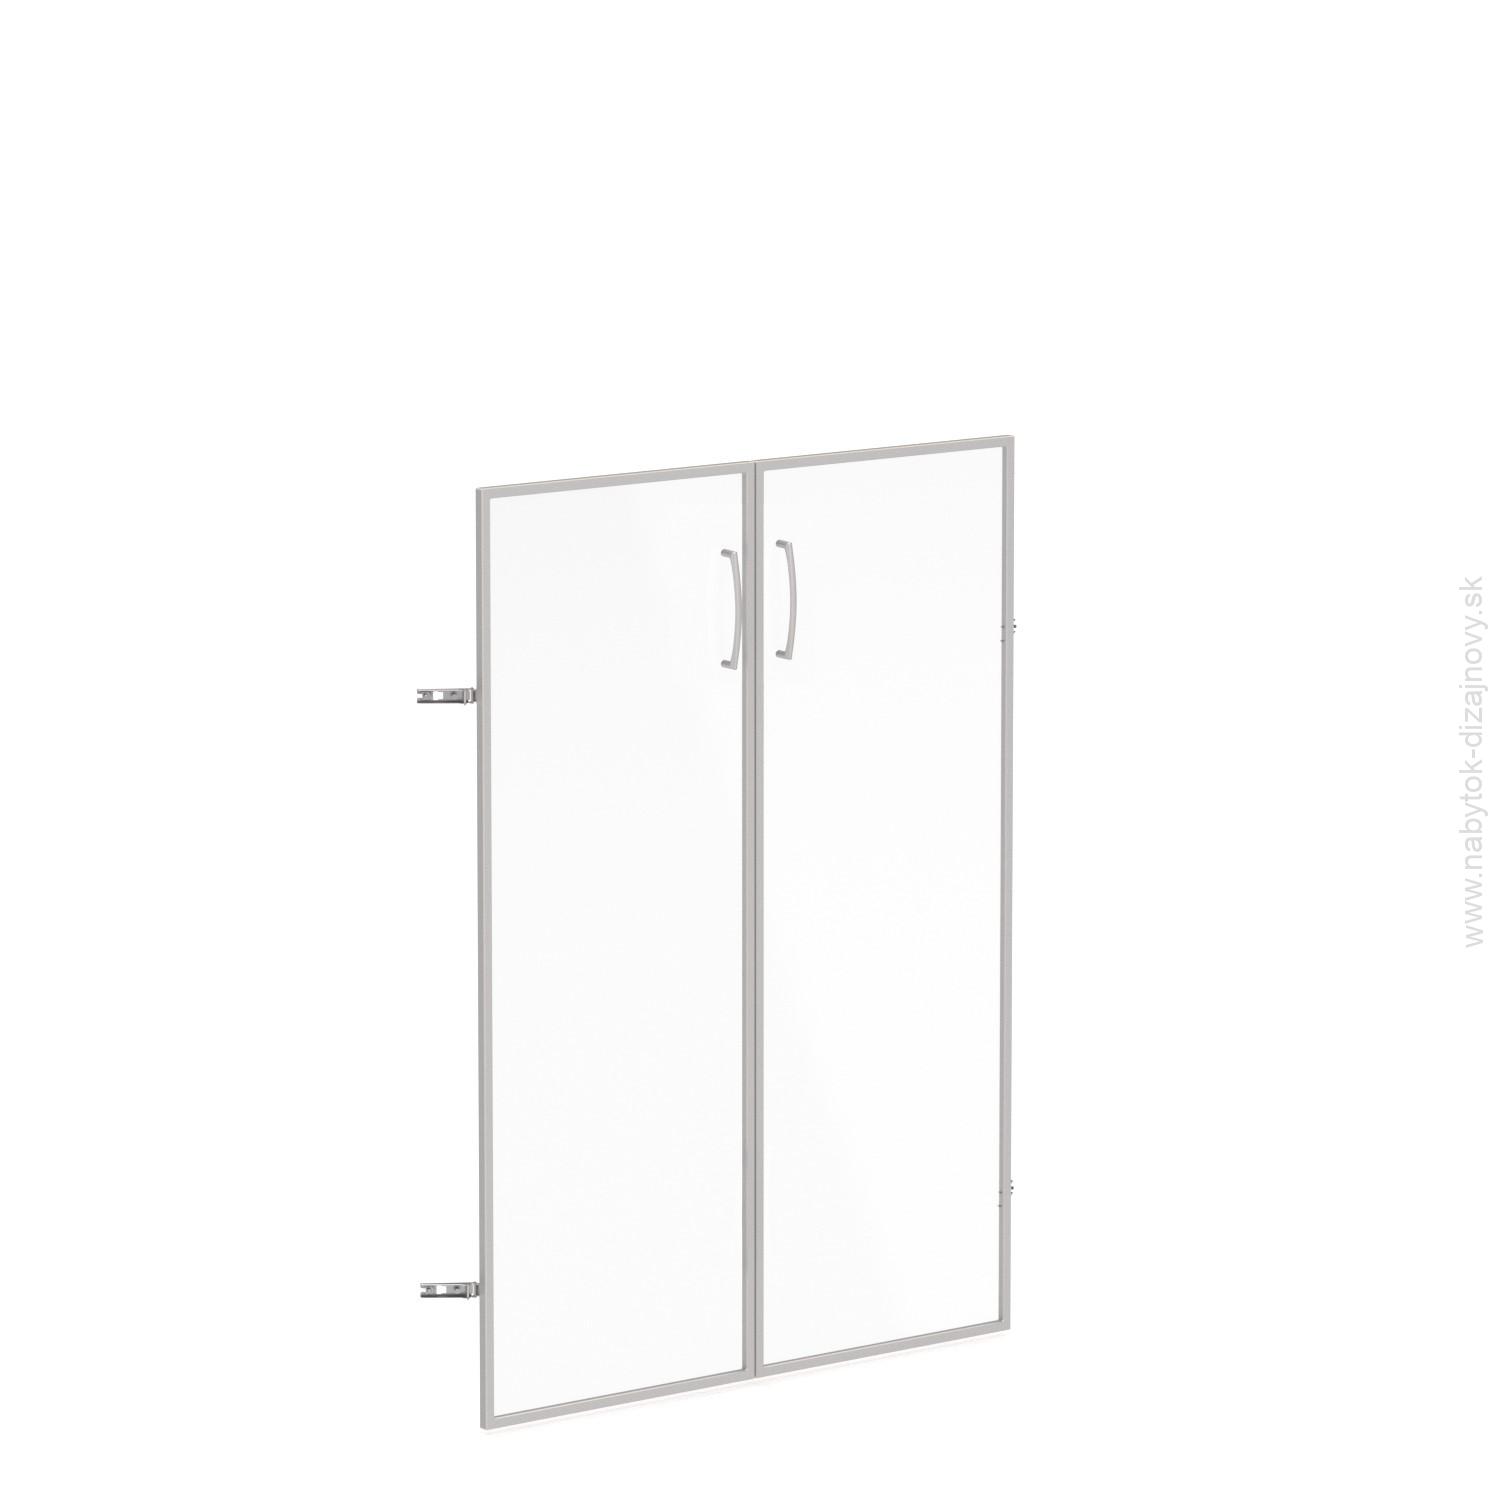 Sklenené dvere v AL ráme, šírka 80cm, výška 112,9cm